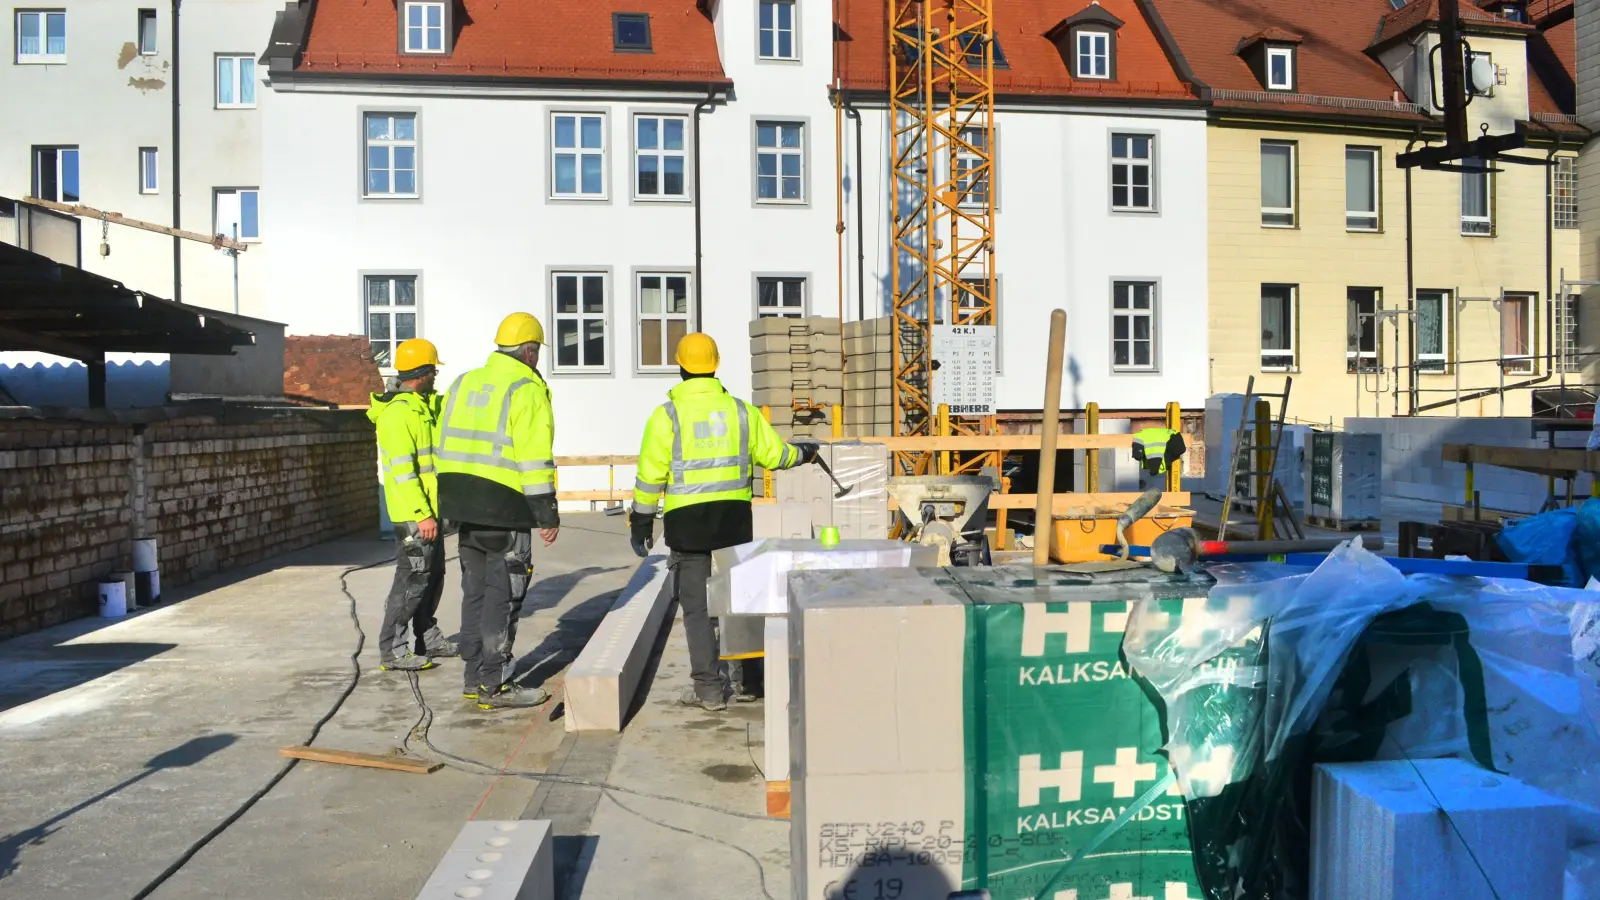 Im Landkreis Ansbach liegt die Zahl der stornierten Bauprojekte aktuell laut Christine Volland von der Bau-Innung um 50 bis 80 Prozent höher als noch im Vorjahr. Die Obermeisterin rechnet auch nicht mit einer kurzfristigen Verbesserung der Situation. (Archivfoto: Jennifer Sandmeyer)